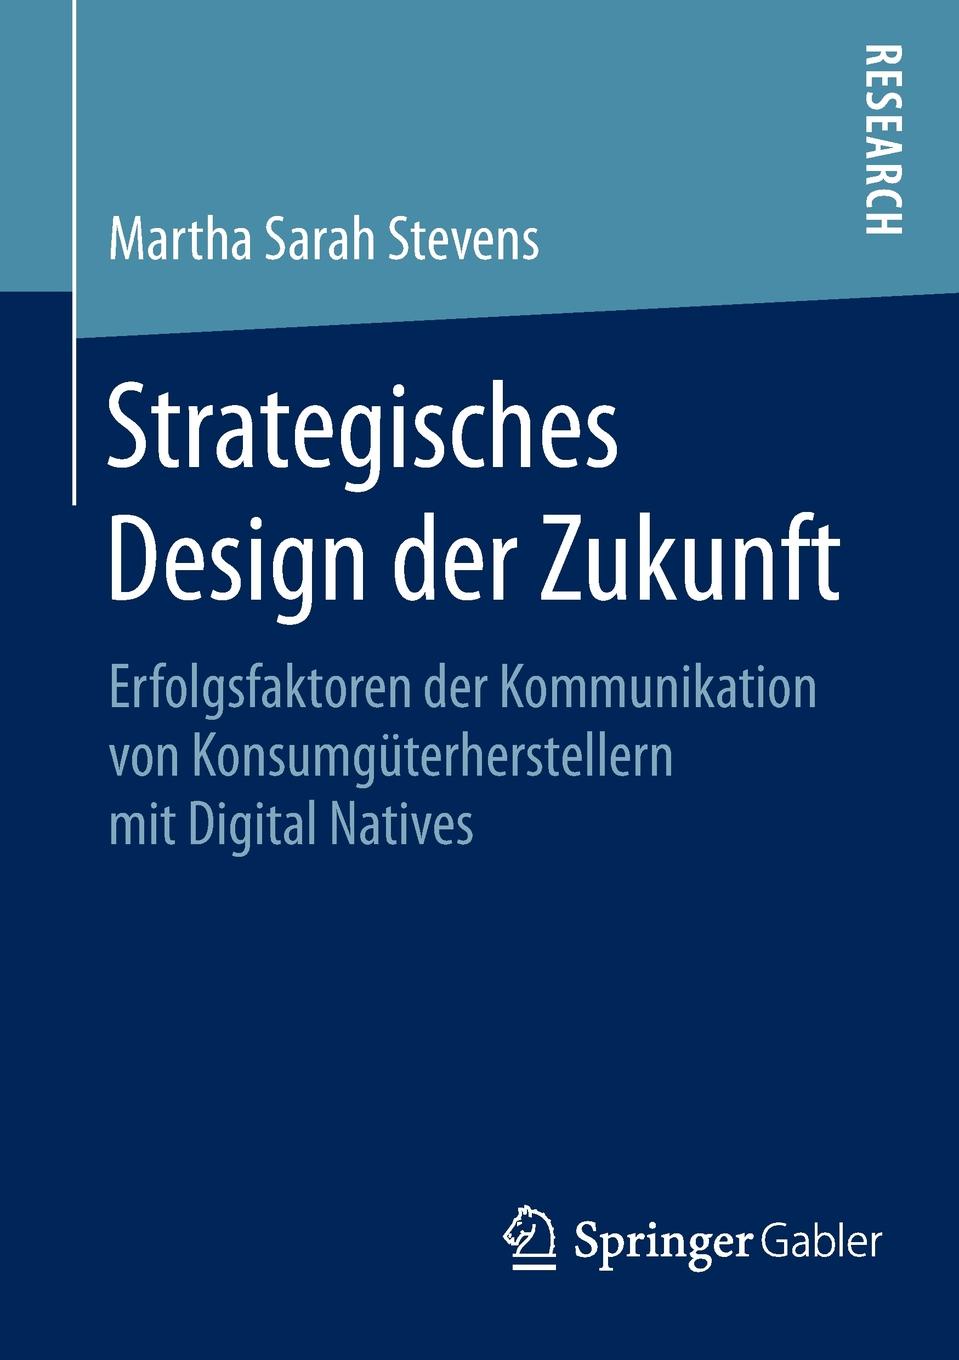 Strategisches Design der Zukunft. Erfolgsfaktoren der Kommunikation von Konsumguterherstellern mit Digital Natives